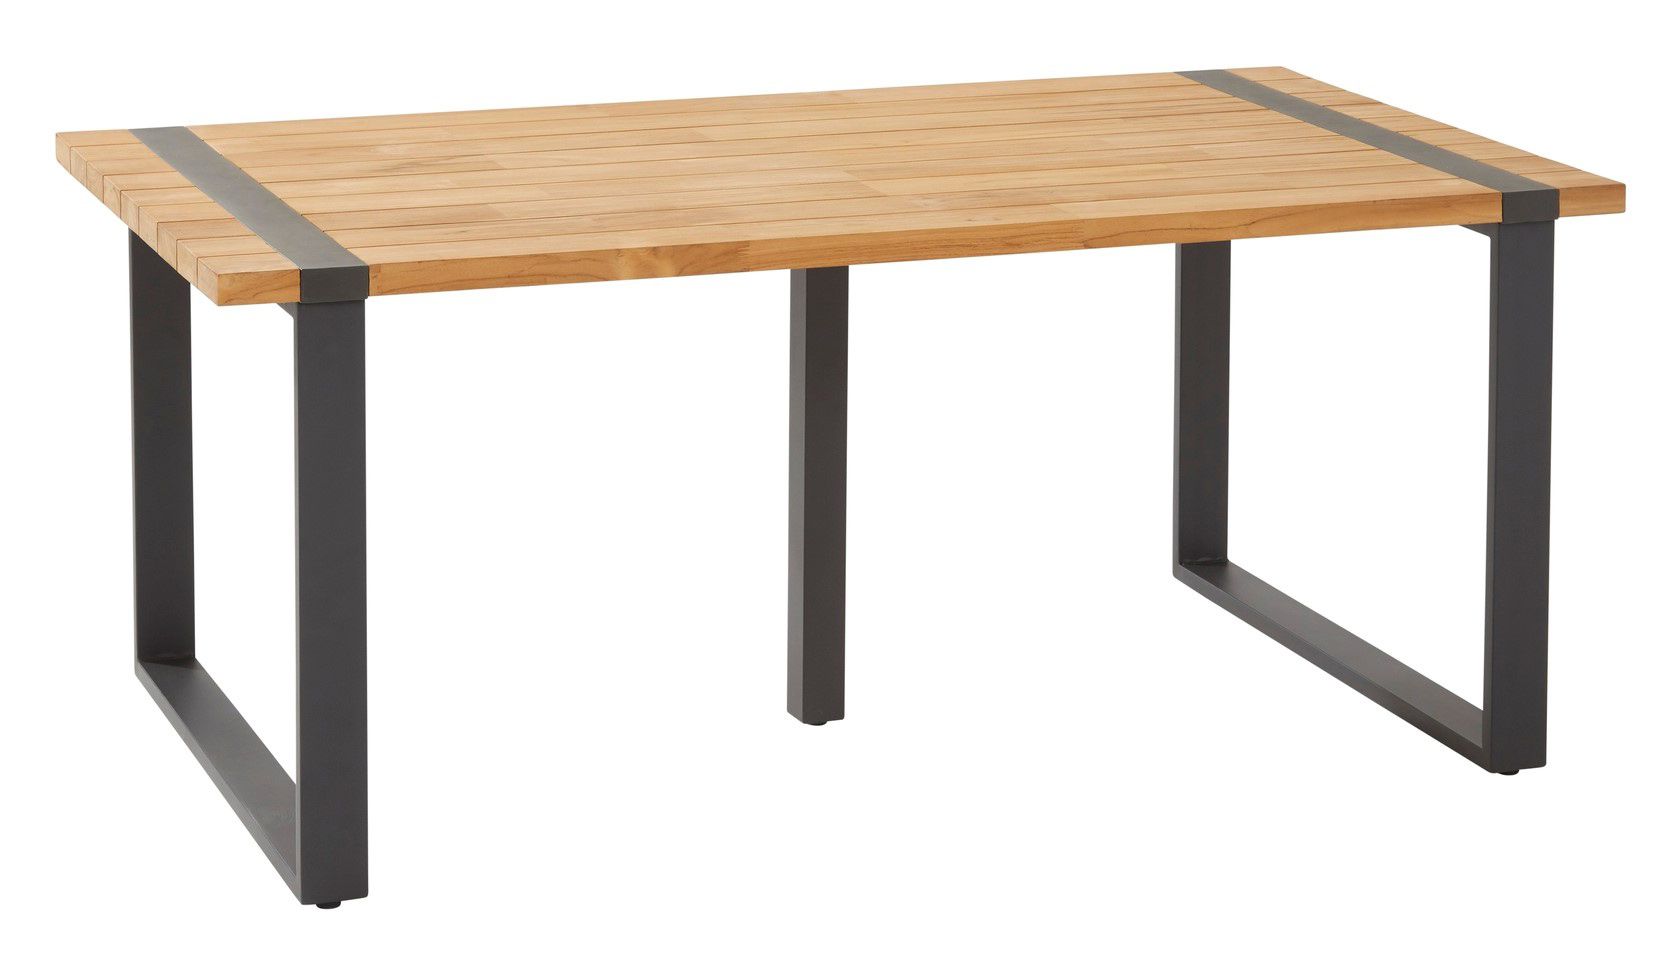 4Seasons Outdoor designové zahradní stoly Alto Table (180 x 100 cm) - DESIGNPROPAGANDA